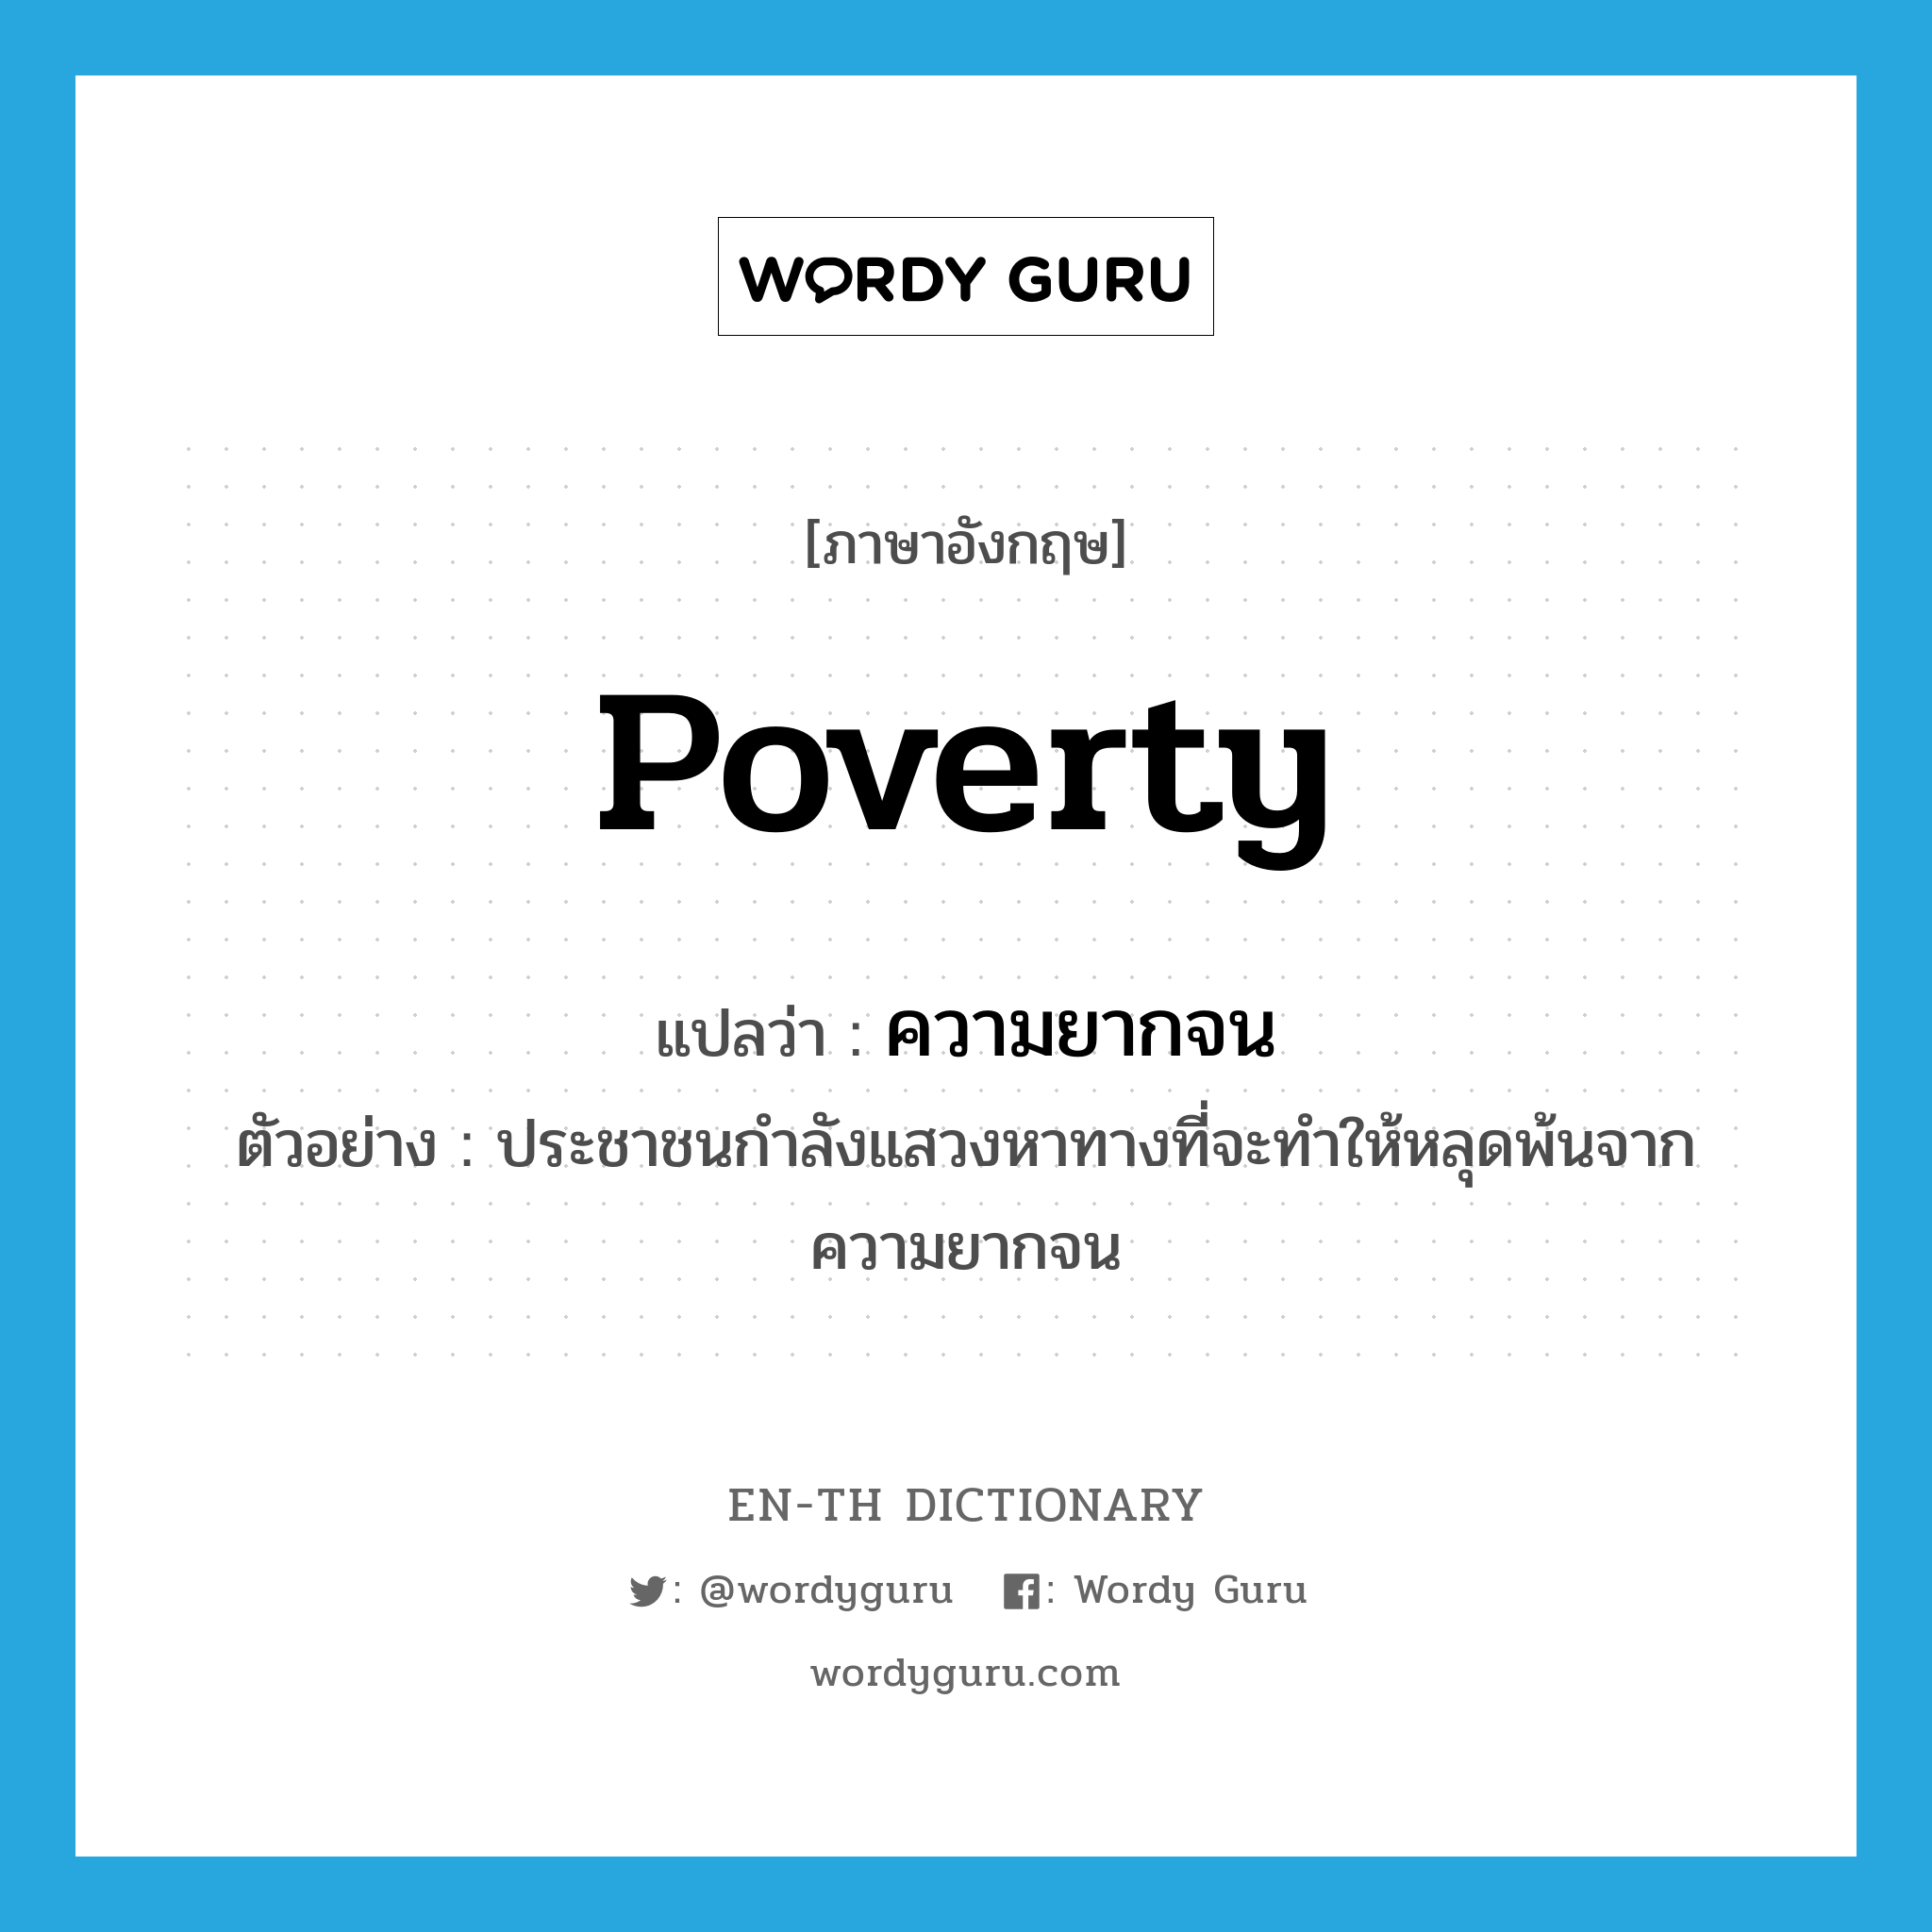 ความยากจน ภาษาอังกฤษ?, คำศัพท์ภาษาอังกฤษ ความยากจน แปลว่า poverty ประเภท N ตัวอย่าง ประชาชนกำลังแสวงหาทางที่จะทำให้หลุดพ้นจากความยากจน หมวด N